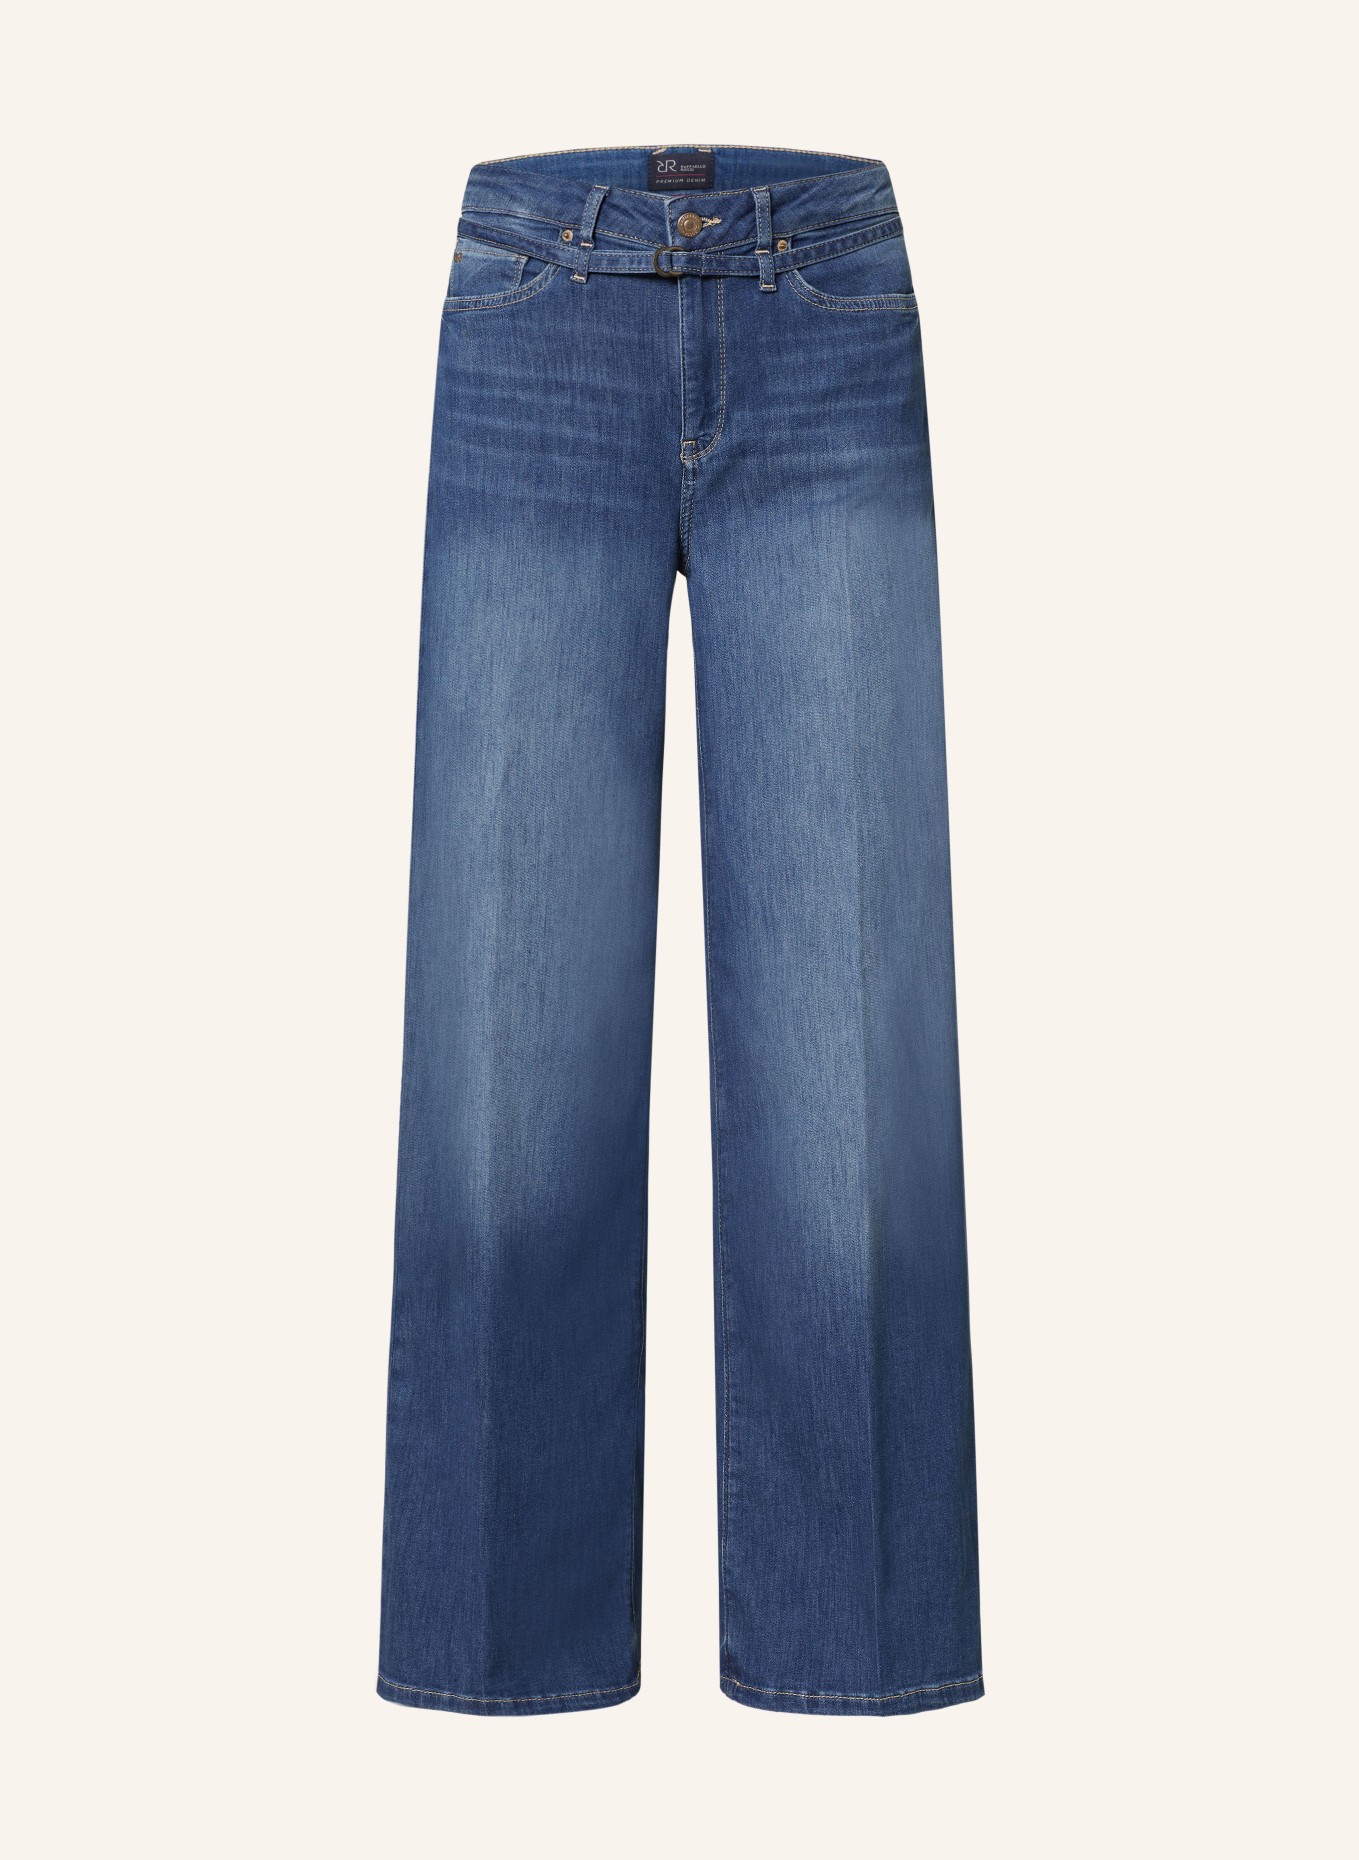 RAFFAELLO ROSSI Flared Jeans SVENTY B, Farbe: 850 blue blue (Bild 1)